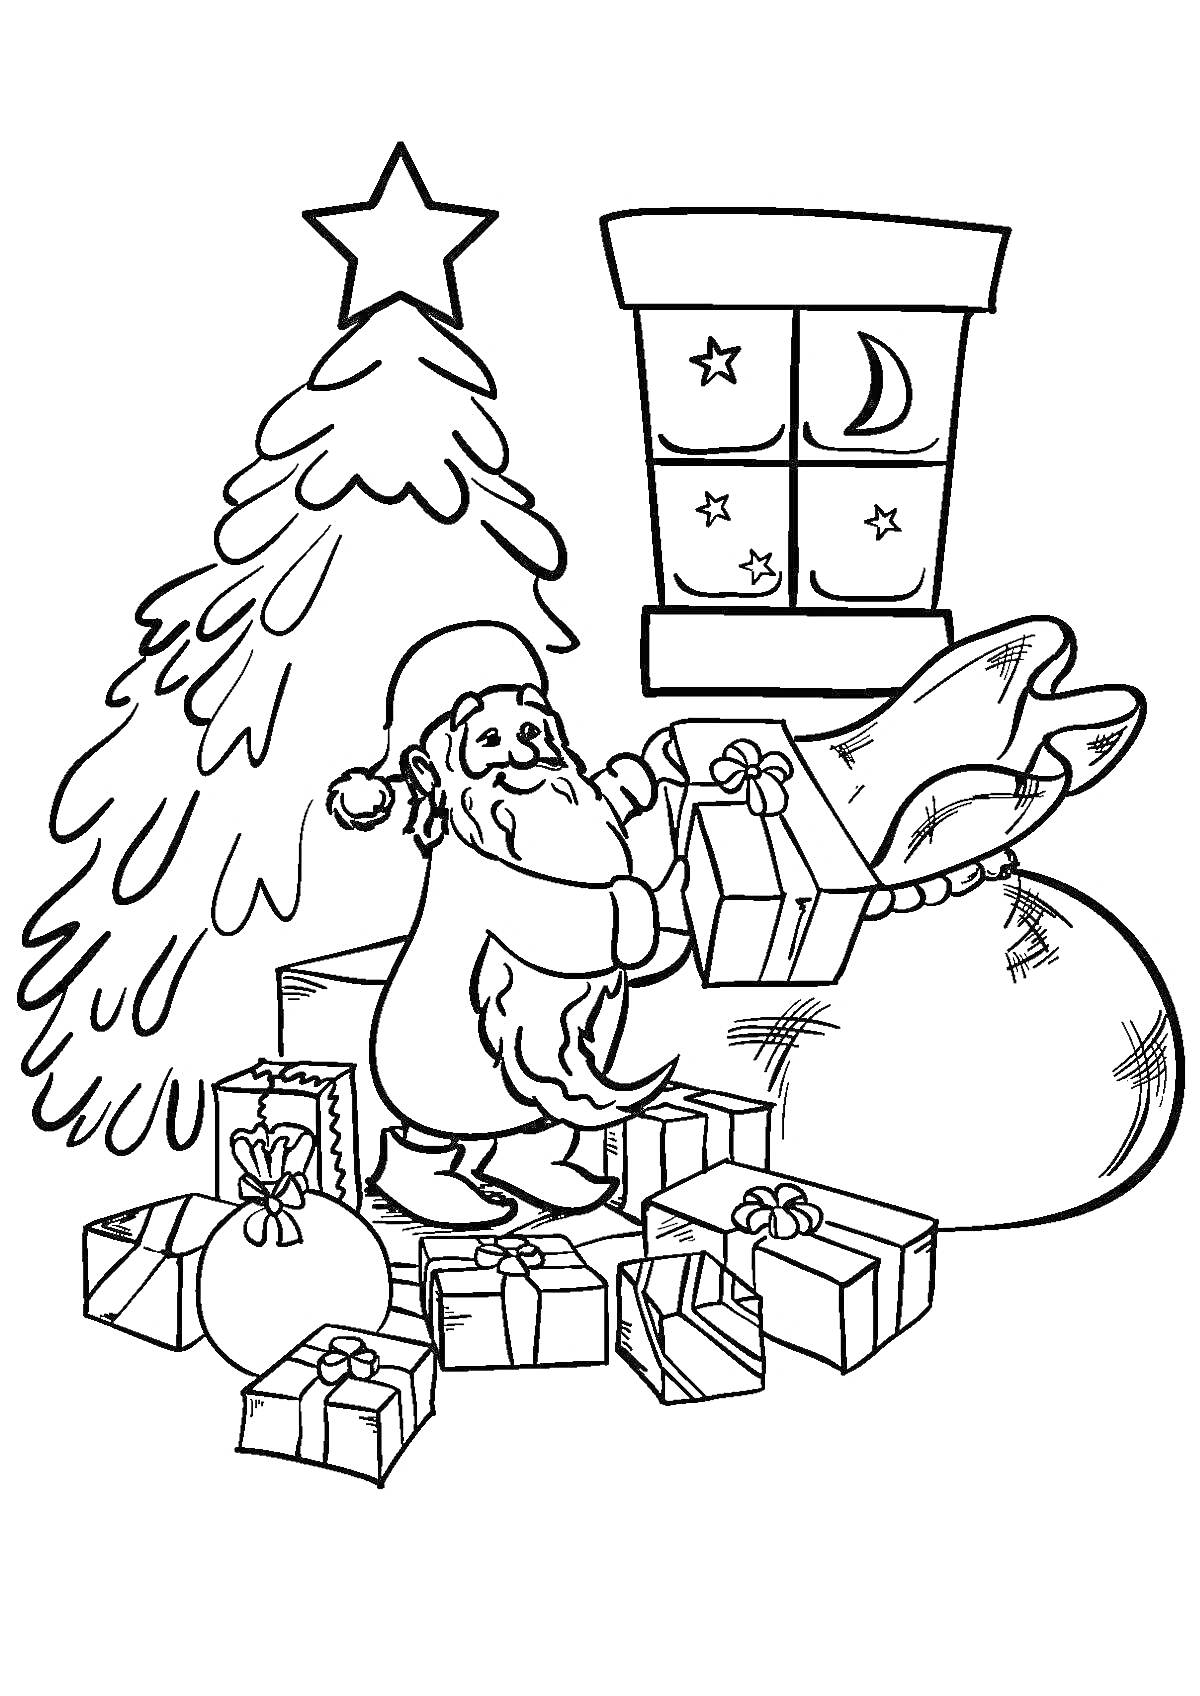 Санта в процессе упаковки новогодних подарков у ёлки, рядом с мешком подарков и под окном с видом на луну и звёзды